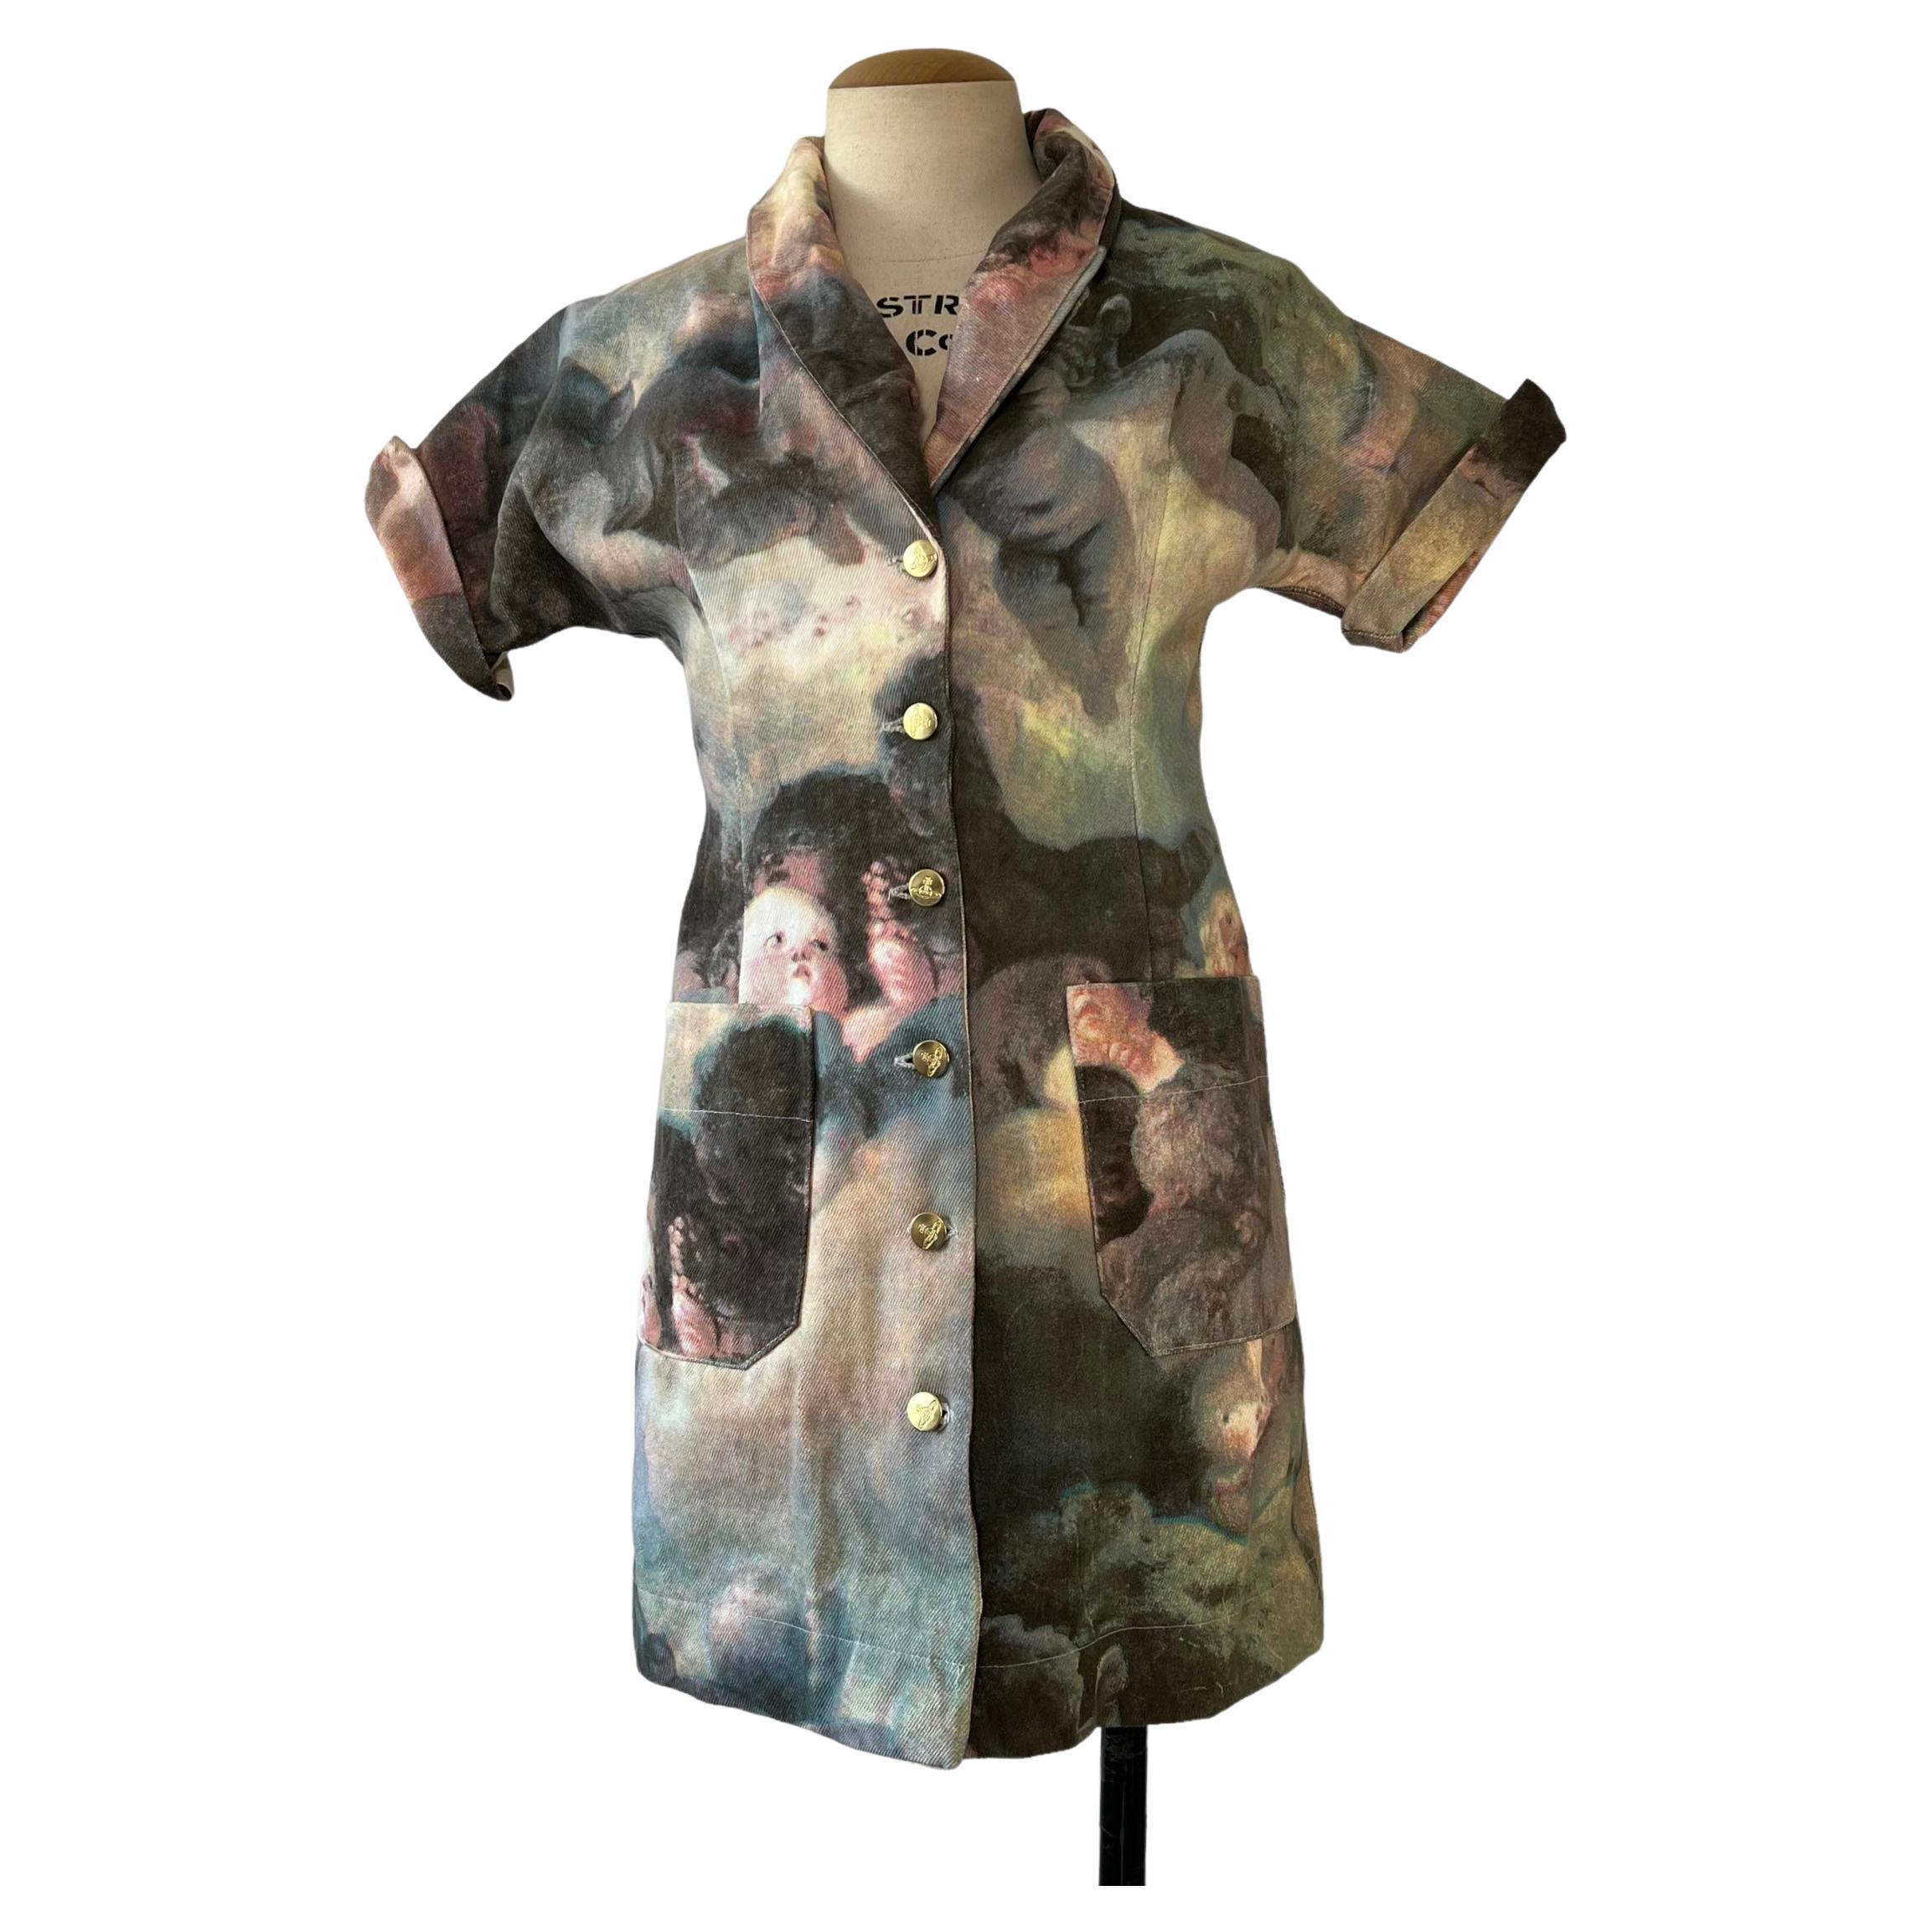 Das Vivienne Westwood 1992 Putti Print Dress ist ein wahres Schmuckstück aus der bemerkenswerten Kollektion der legendären Modedesignerin. Der Druck wurde erstmals 1991 als Teil der Vivienne Westwood Collection'S veröffentlicht. Sie wurde jedoch in